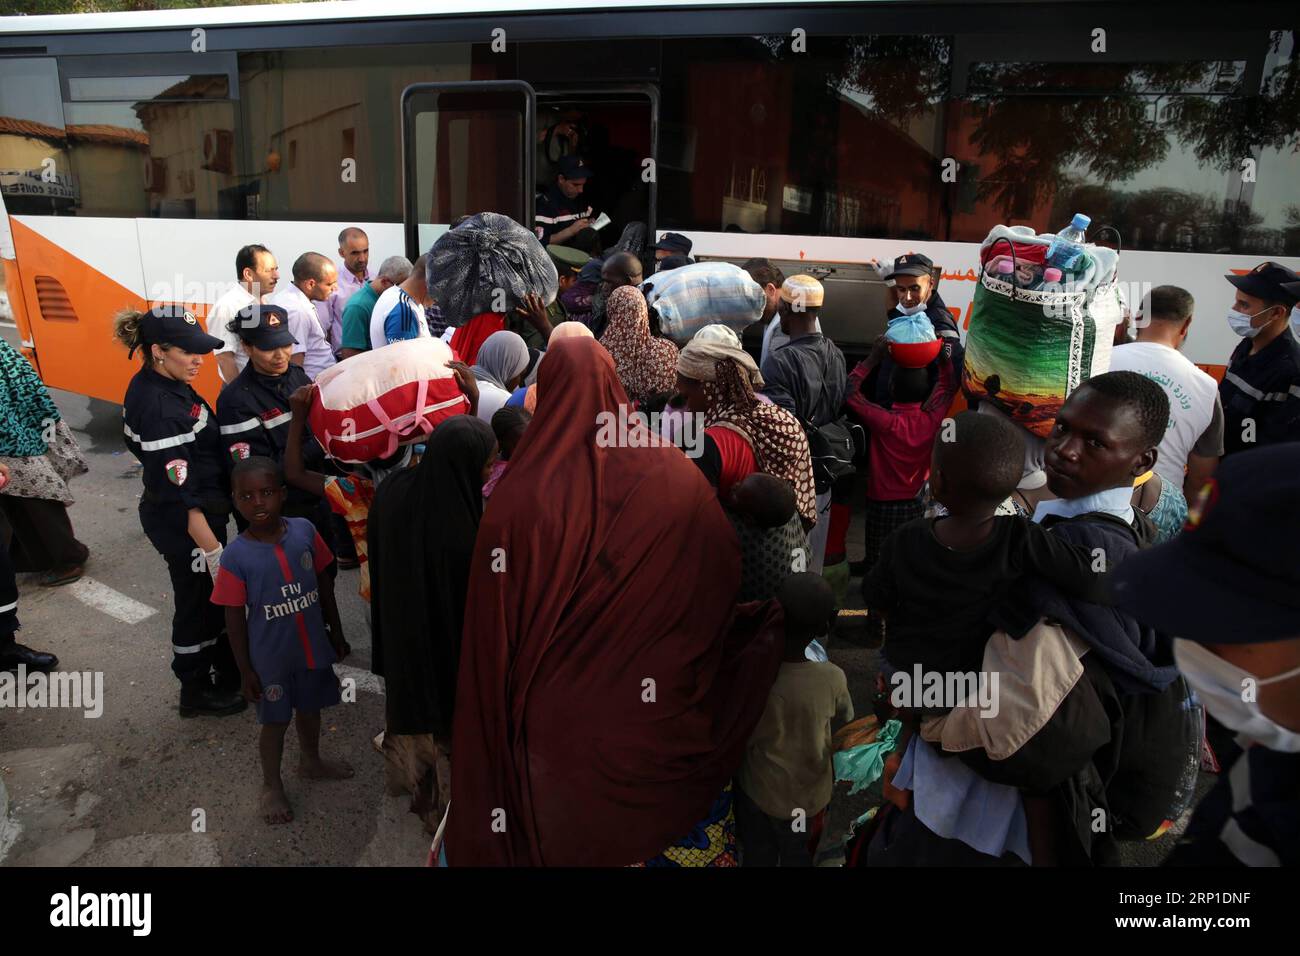 (180629) -- ALGIER, 29. Juni 2018 -- illegale Einwanderer steigen in einen Bus, um am 28. Juni 2018 in ihre Heimatstadt Algier, der Hauptstadt Algeriens, geschickt zu werden. Das algerische Außenministerium hat am Mittwoch die Möglichkeit ausgeschlossen, Haftgebiete für illegale Einwanderer einzurichten, da NGOs kritisiert haben, dass die nordafrikanische Nation afrikanische Migranten ohne Papiere misshandelt hat. (yy) ALGERIEN-ALGIER-ILLEGALE EINWANDERER-EINRICHTUNG VON HAFTGEBIETEN-AUSSCHLUSS HUANGxLING PUBLICATIONxNOTxINxCHN Stockfoto